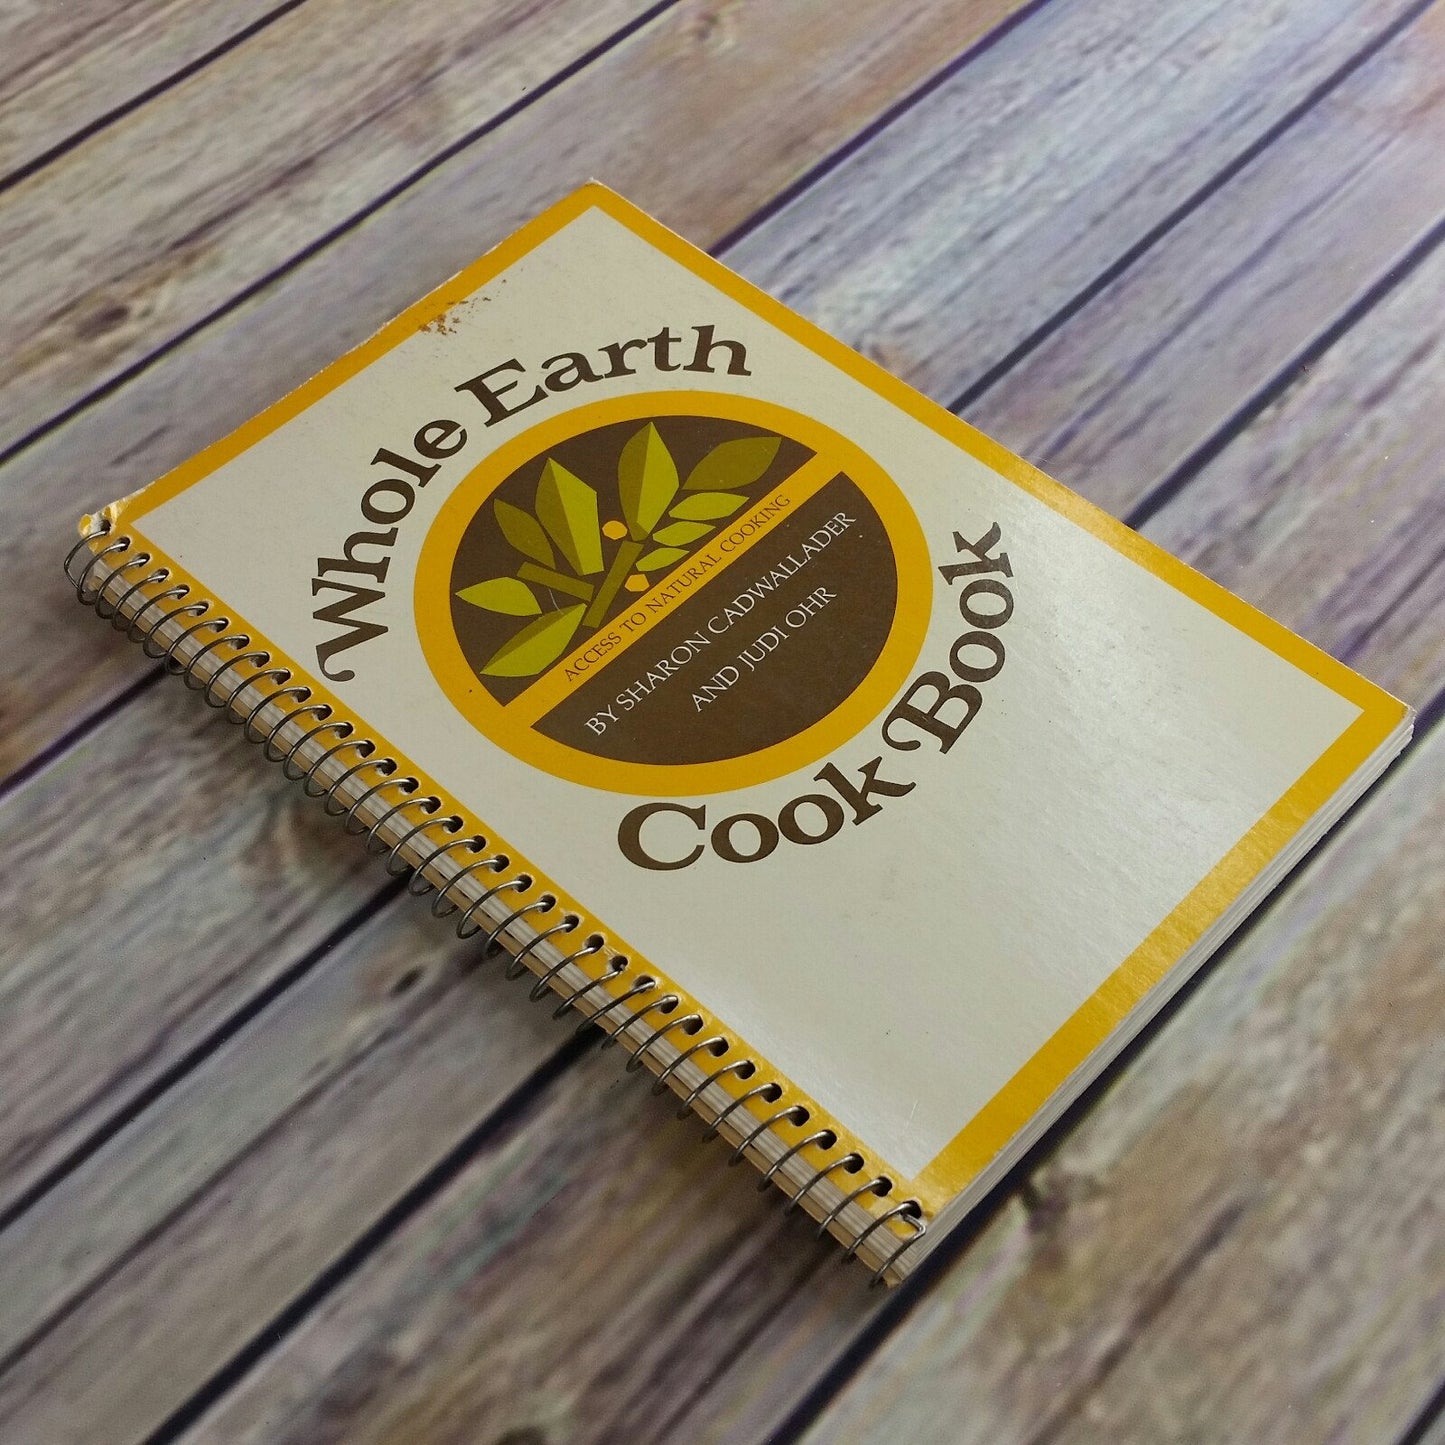 Vintage Cookbook Whole Earth Cook Book 1972 Natural Cooking Spiral Bound Sharon Cadwallader Judi Ohr Santa Cruz Natural Foods Restaurant